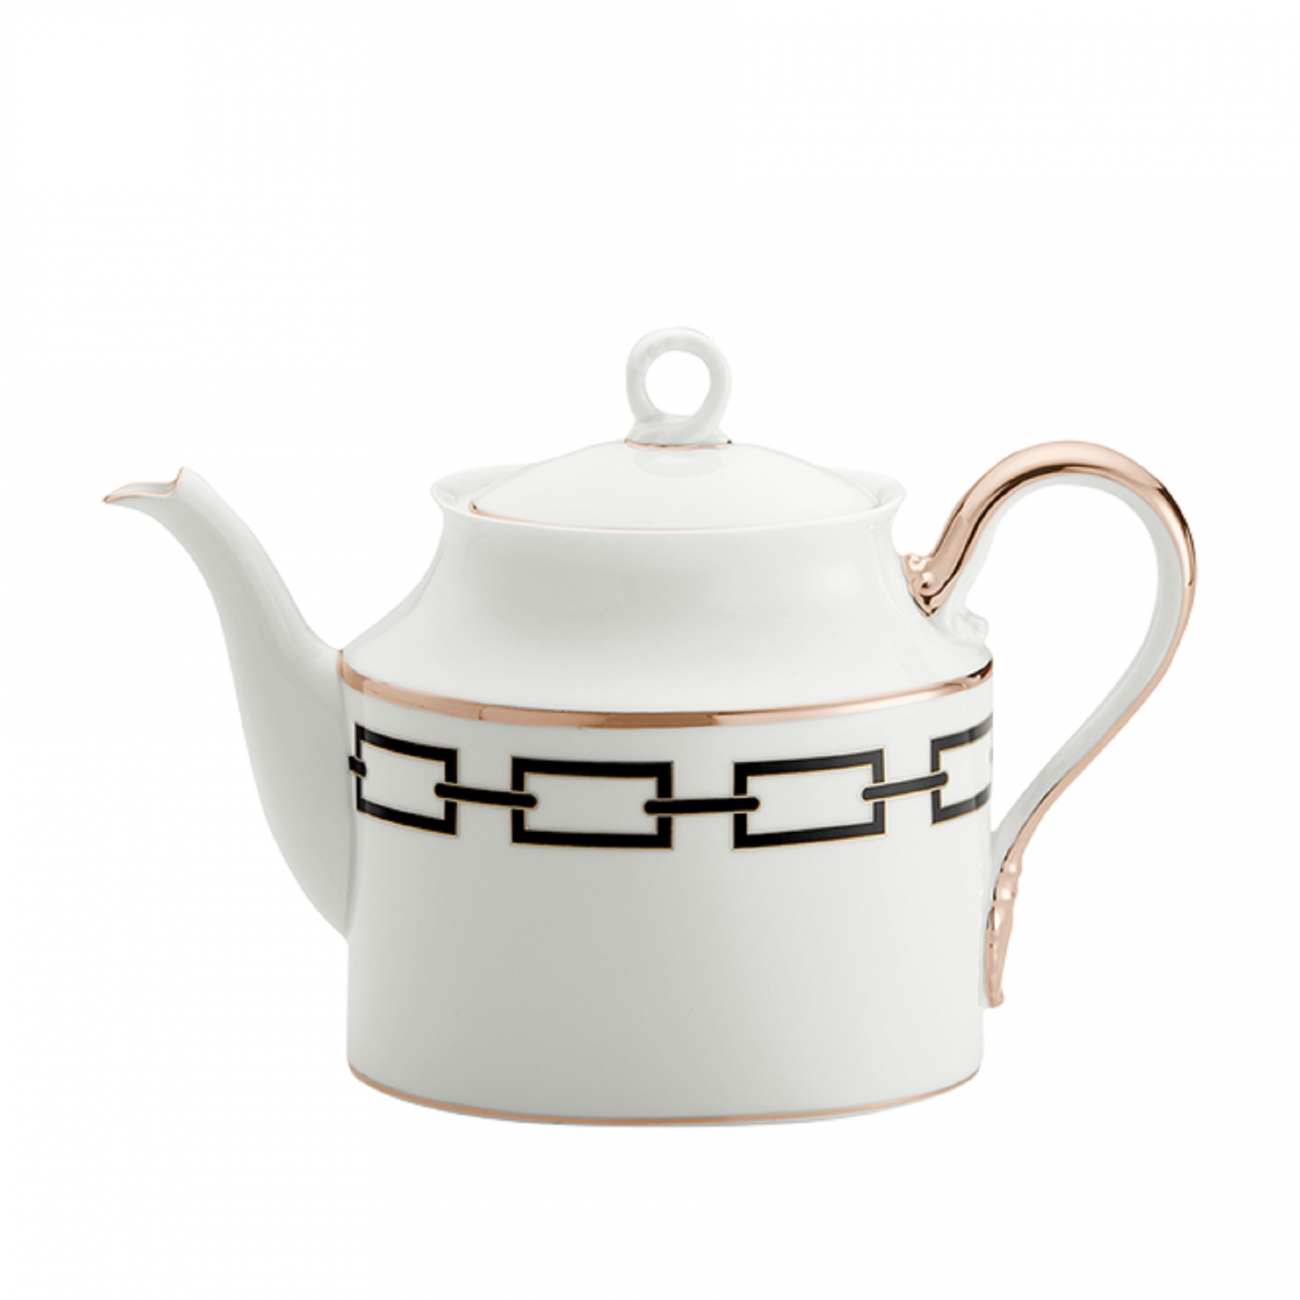 Ginori 1735 Catene Teapot with cover